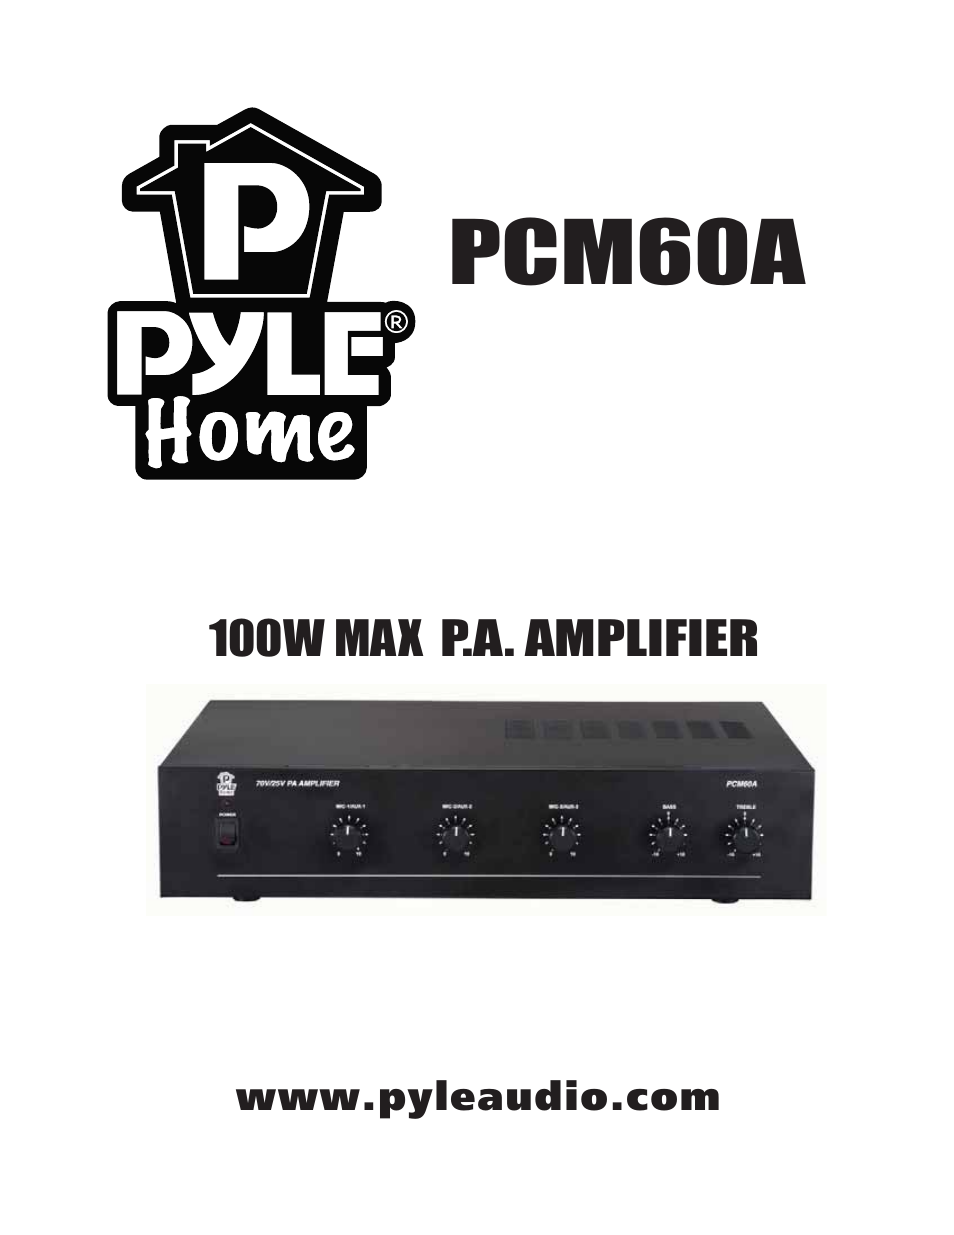 PCM60A